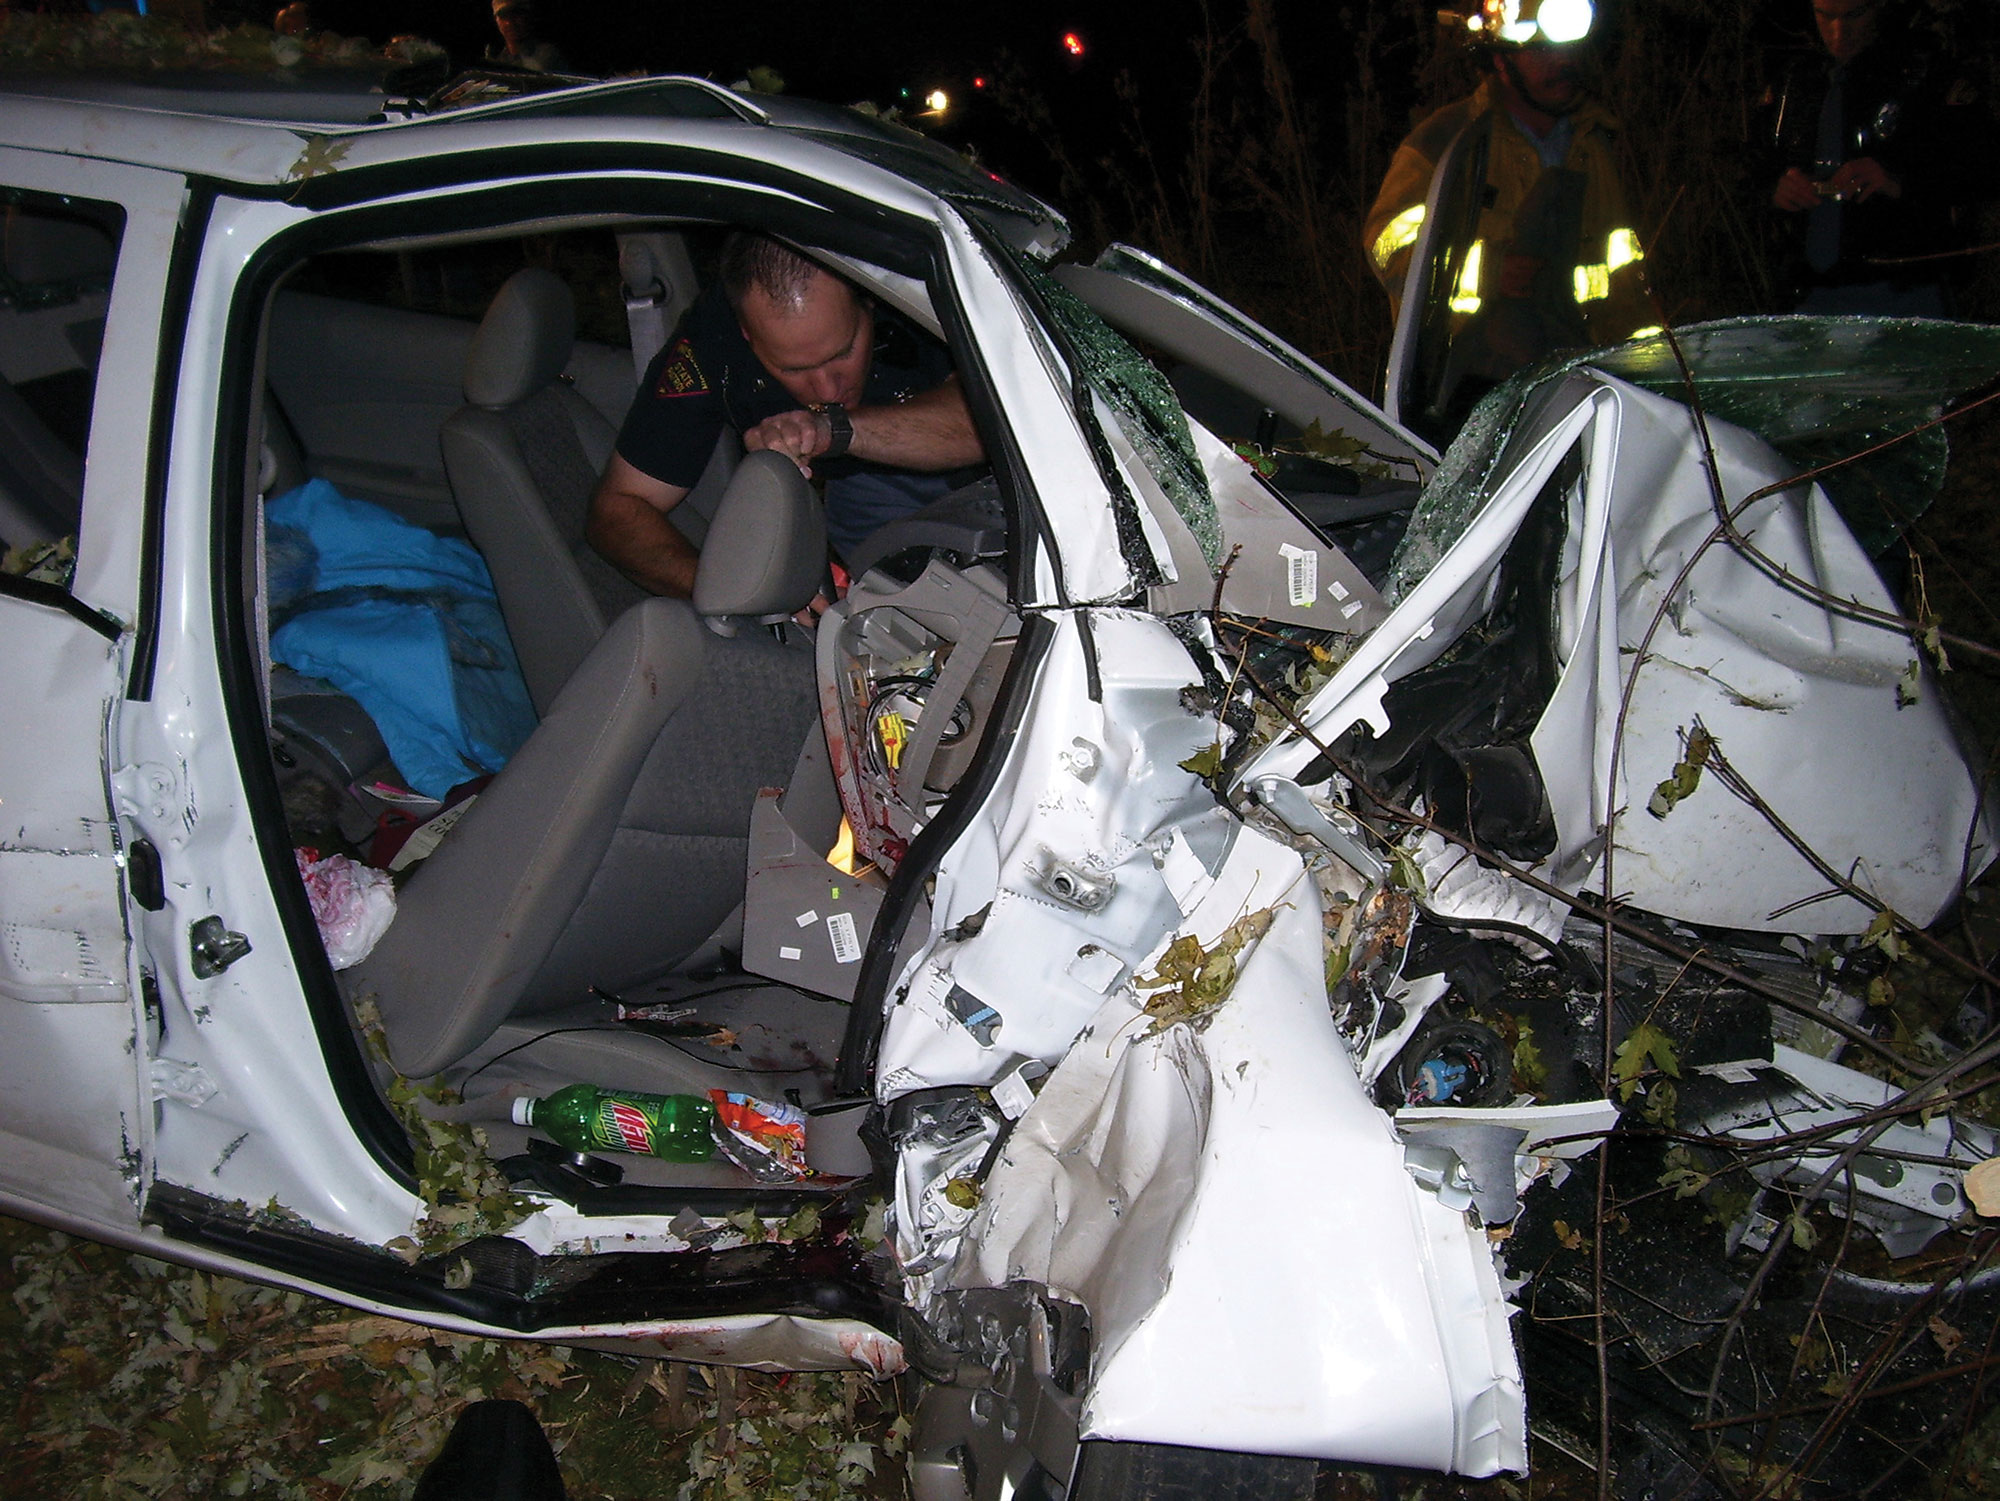 A photo shows a cop investigating a crashed car.